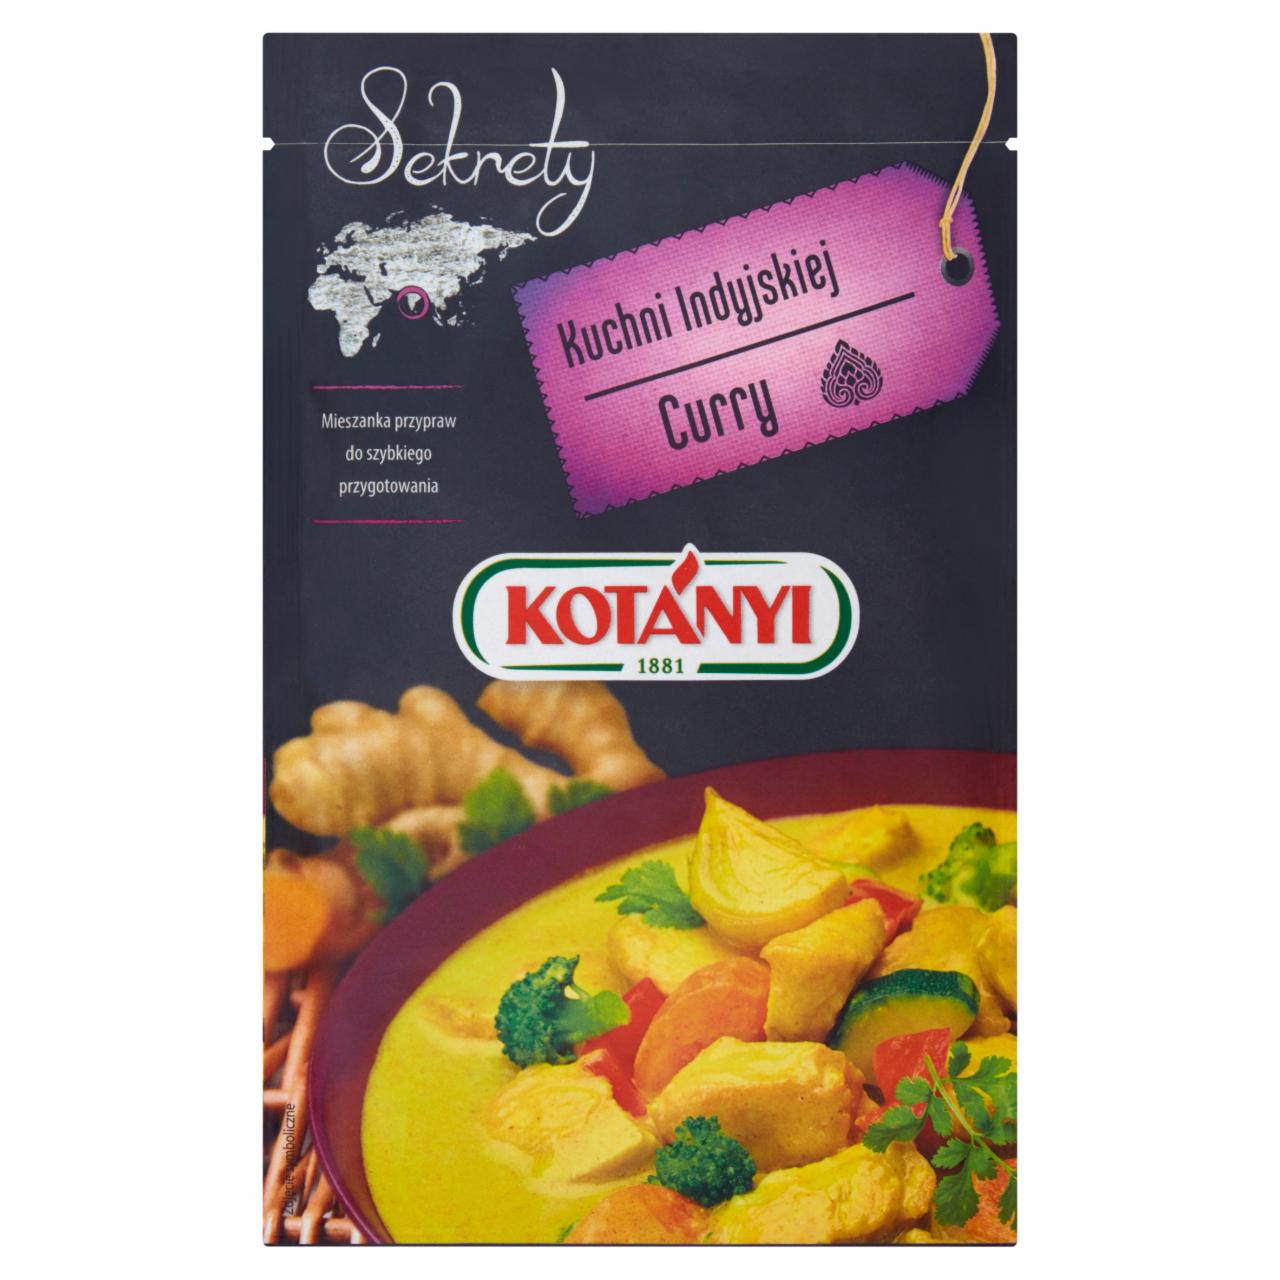 Zdjęcia - Kotányi Sekrety Kuchni Indyjskiej Curry Mieszanka przypraw 20 g